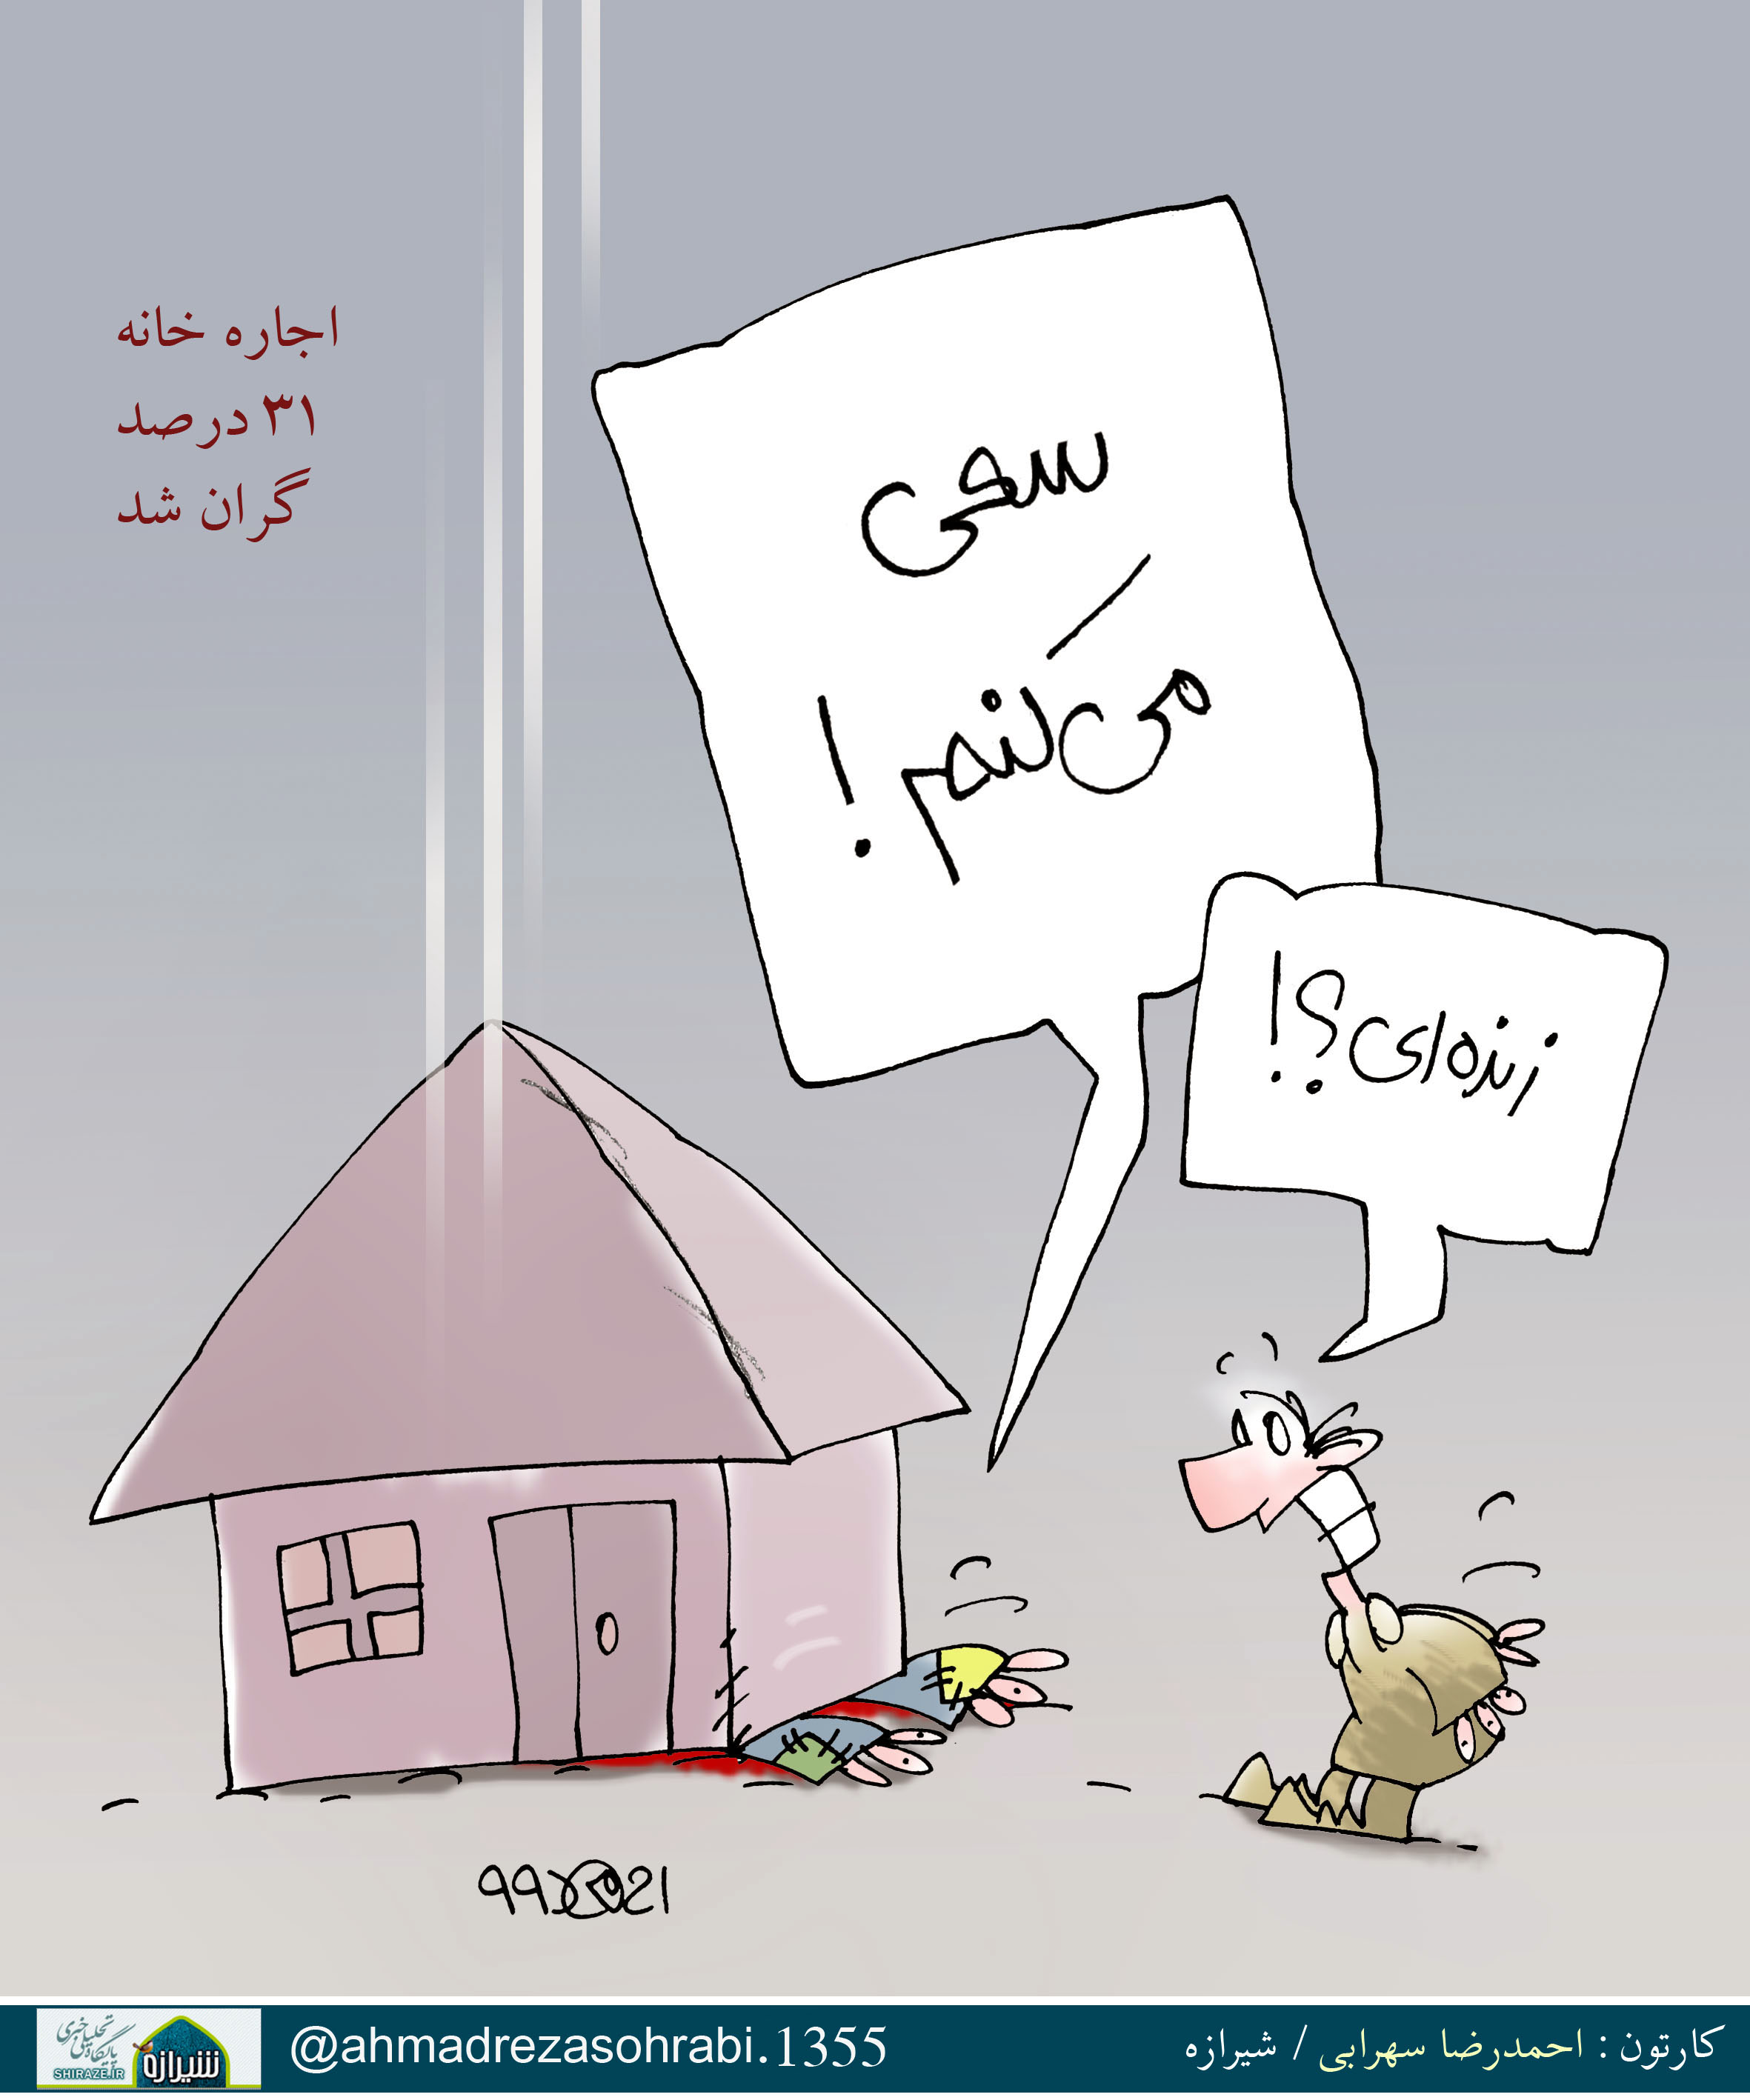 کاریکاتور شیرازه/ اجاره خانه 31 درصد گران شد